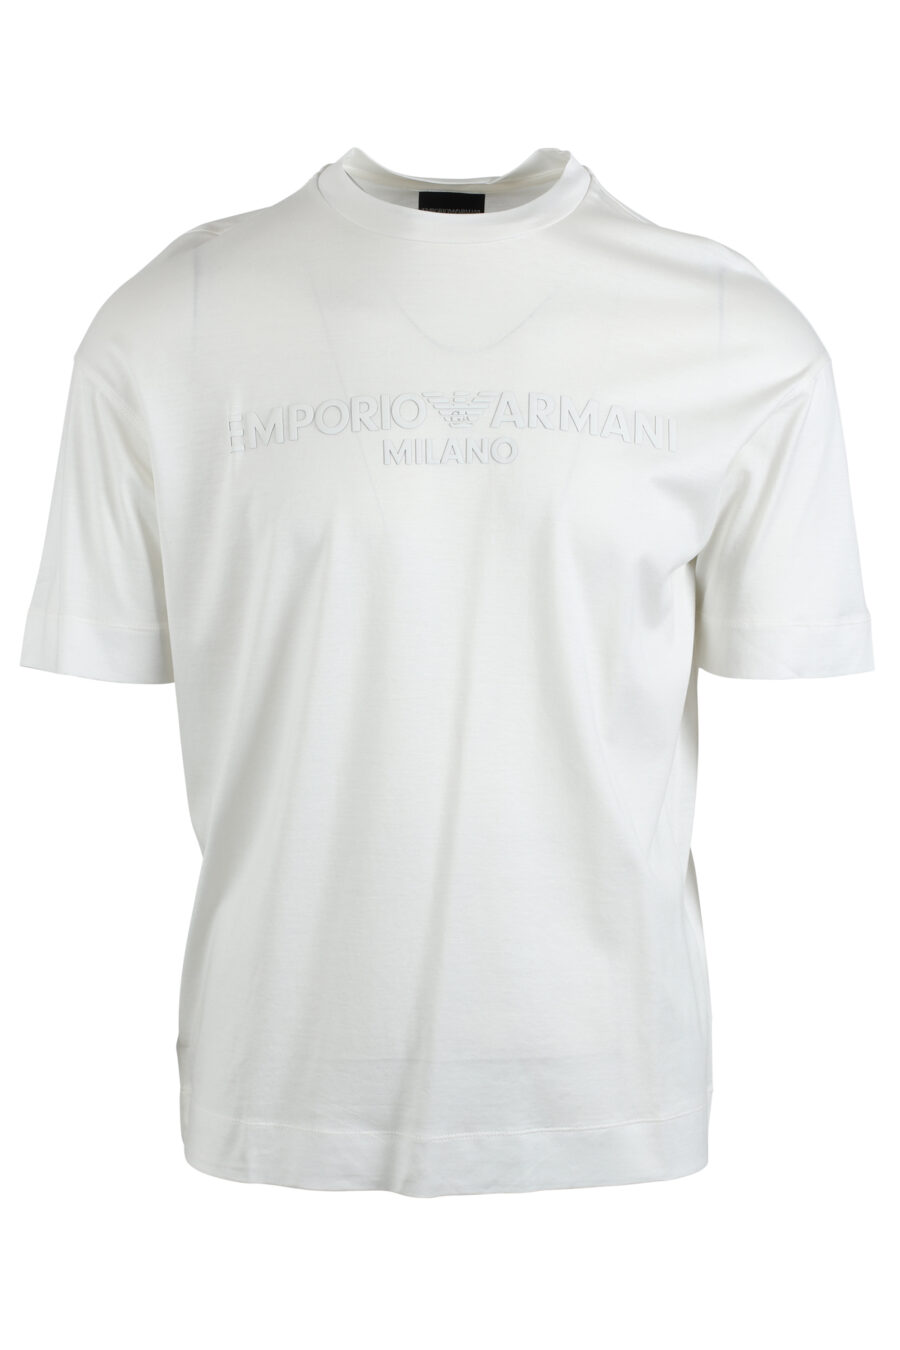 Camiseta blanca con logo monocromático centrado - IMG 4782